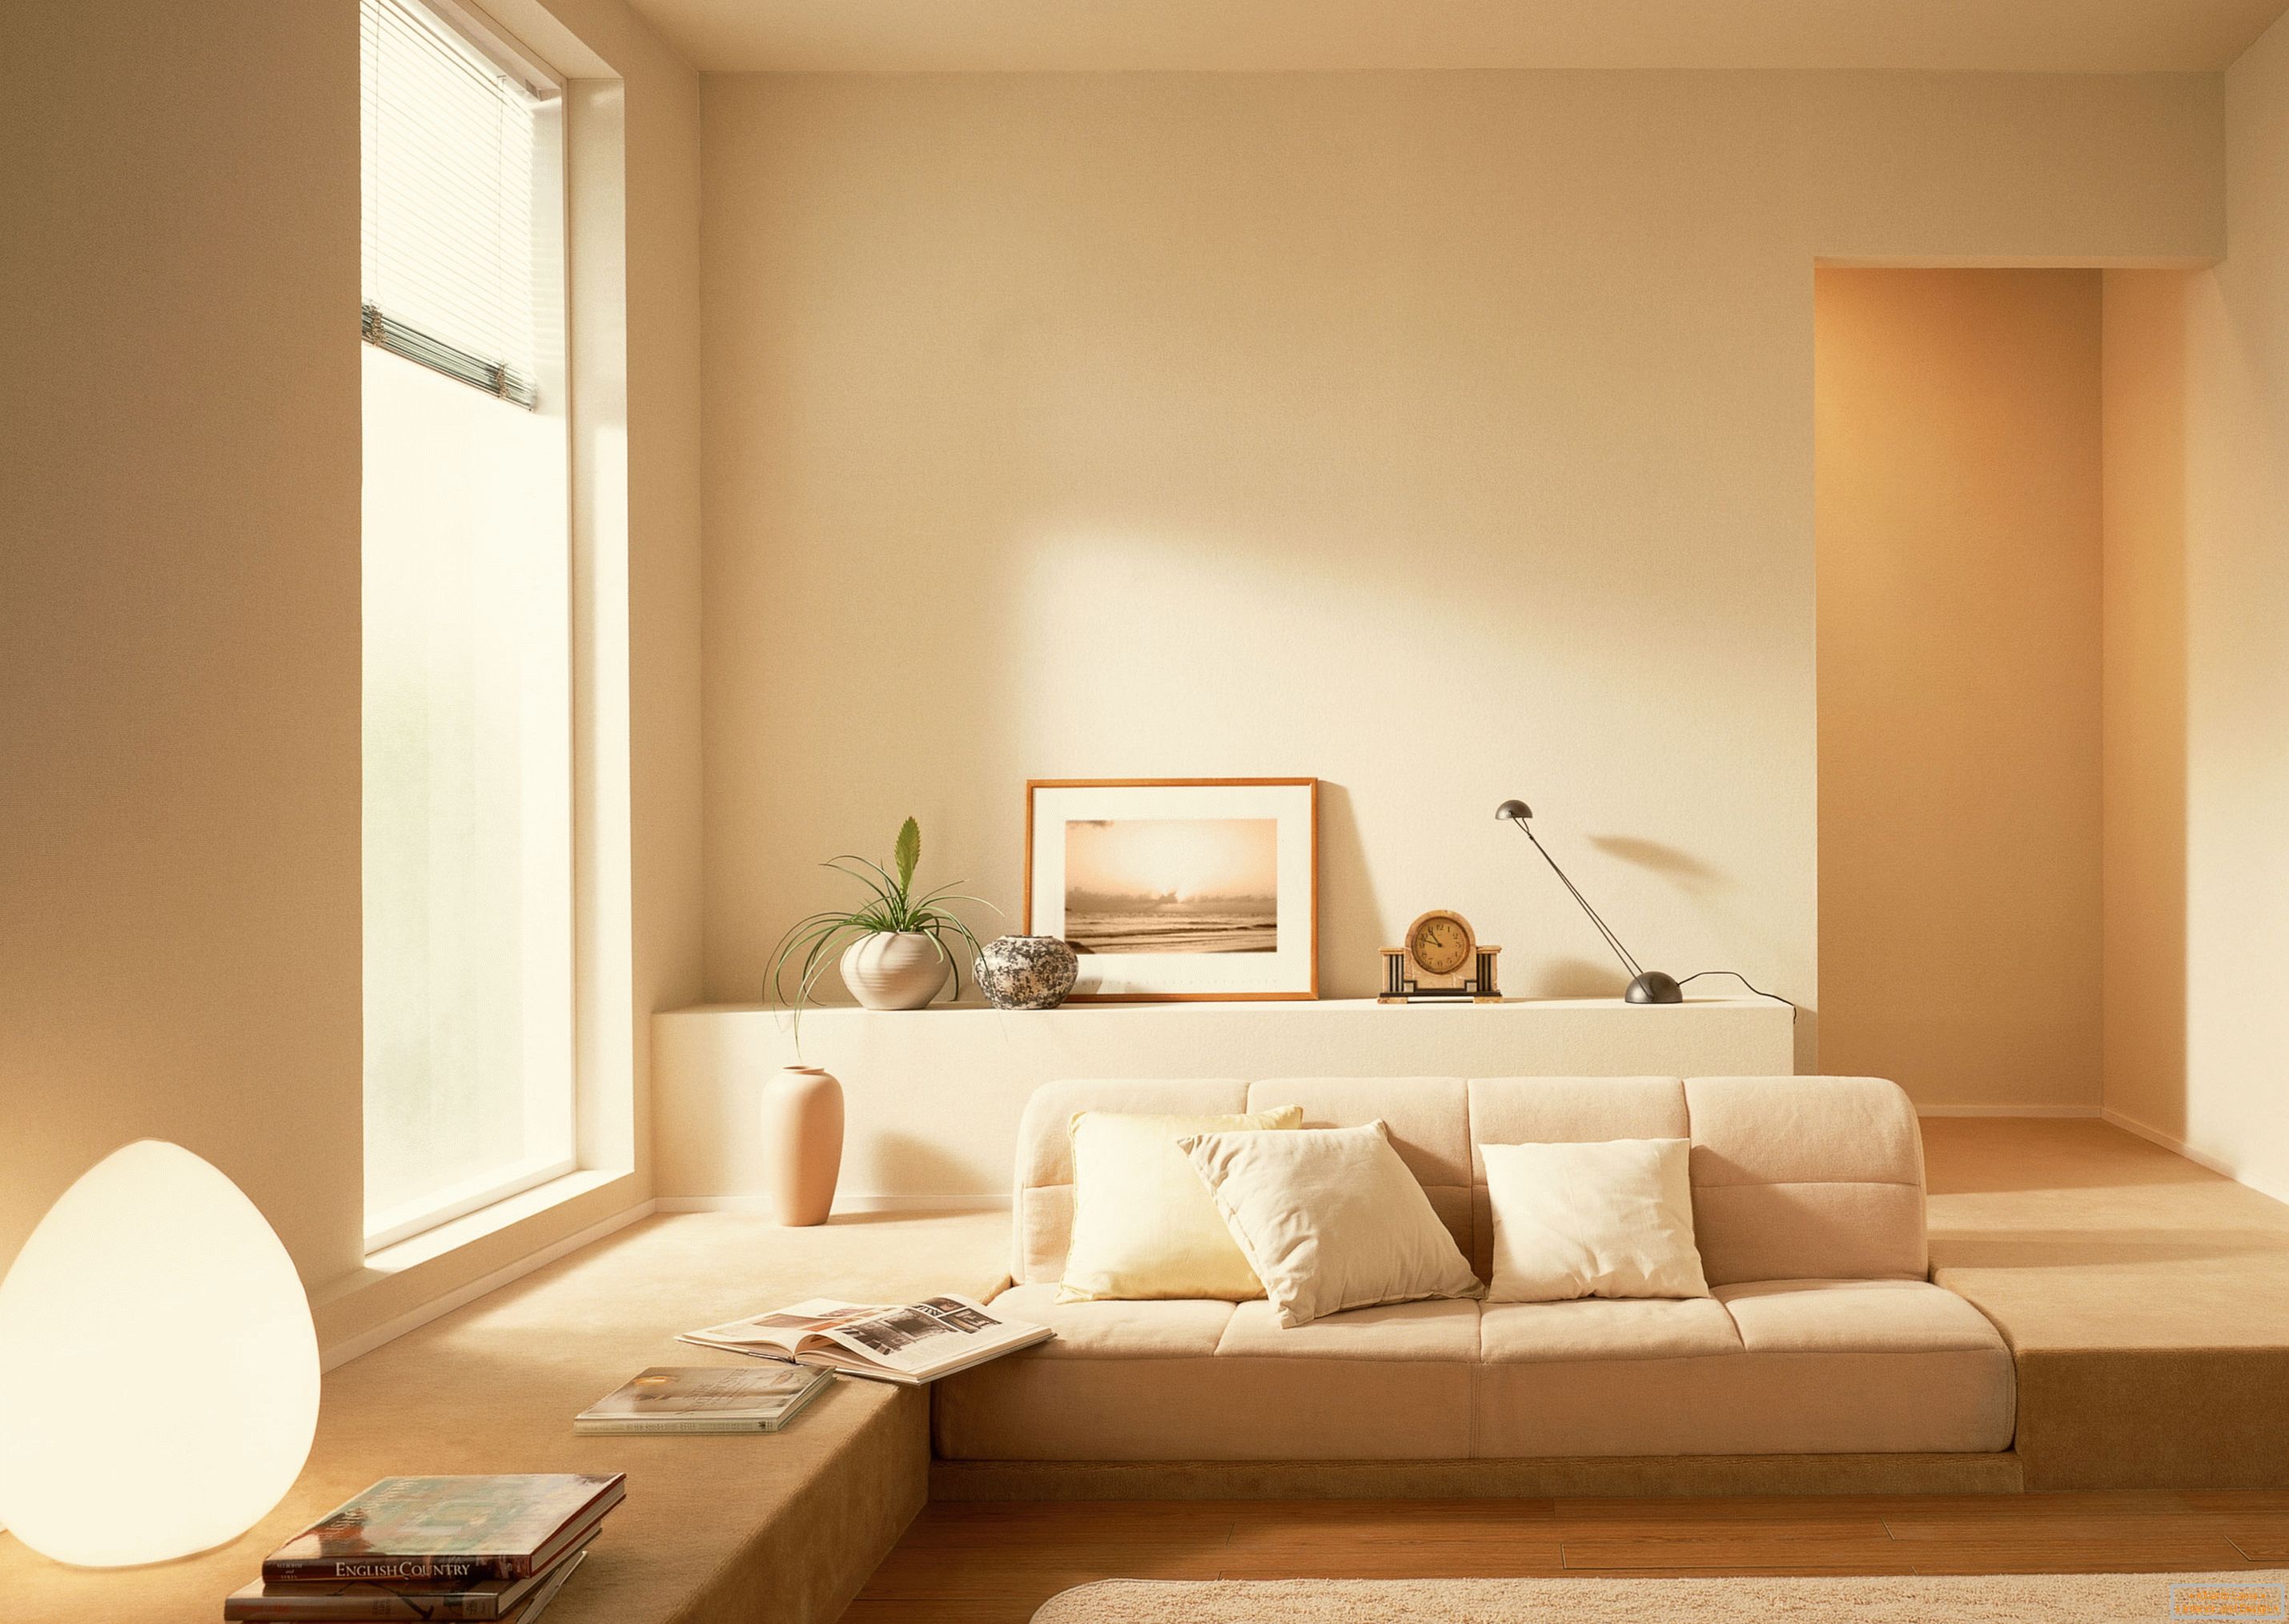 In conformità con lo stile del minimalismo, è stata utilizzata una tonalità beige calma per organizzare l'interno del soggiorno.